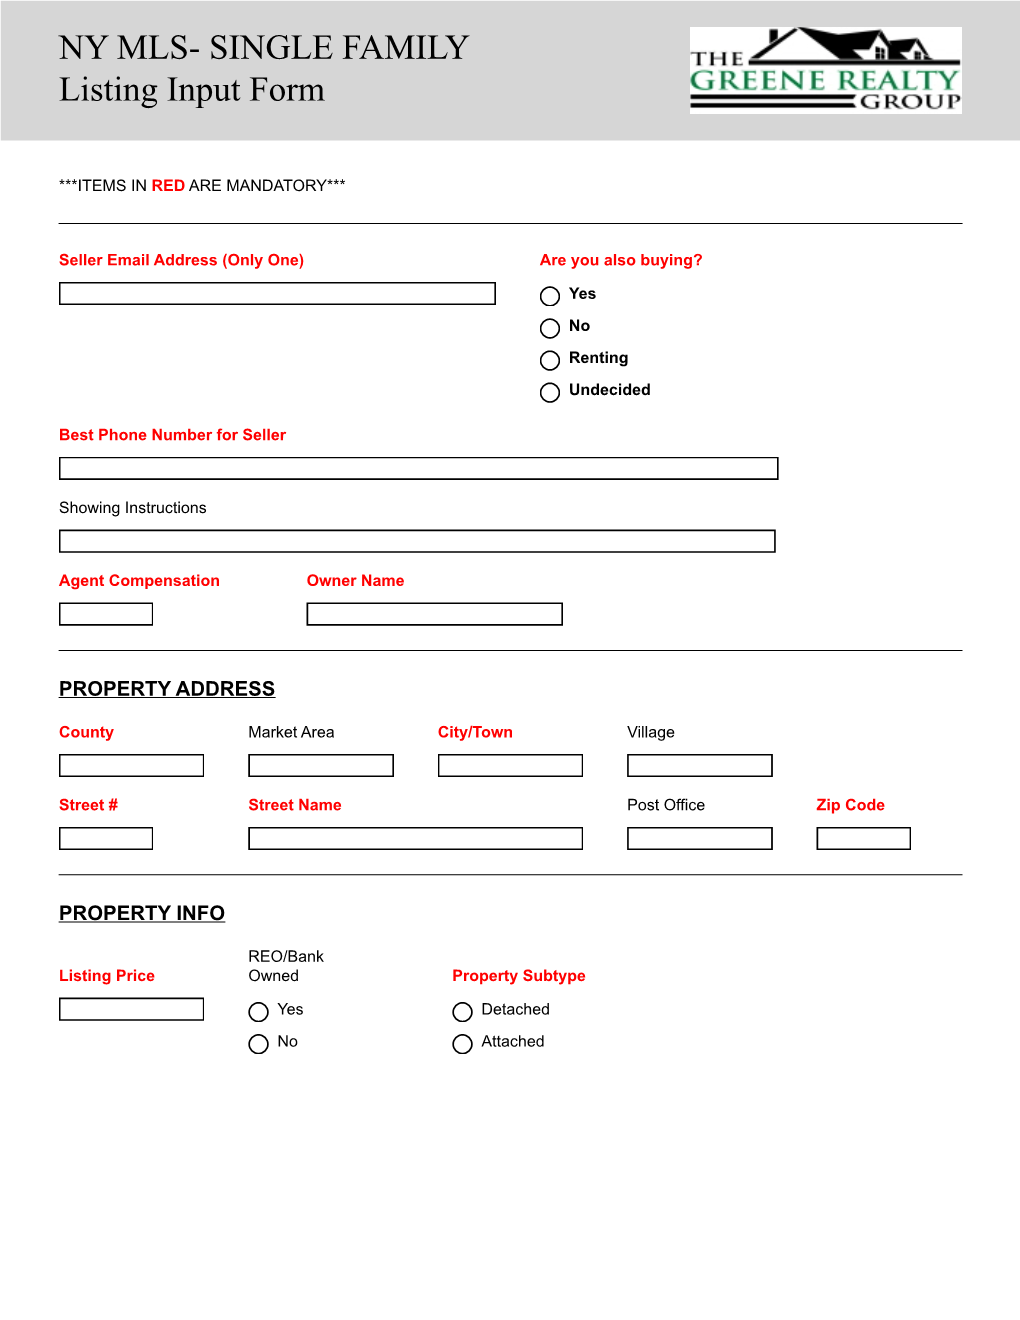 NY MLS- SINGLE FAMILY Listing Input Form